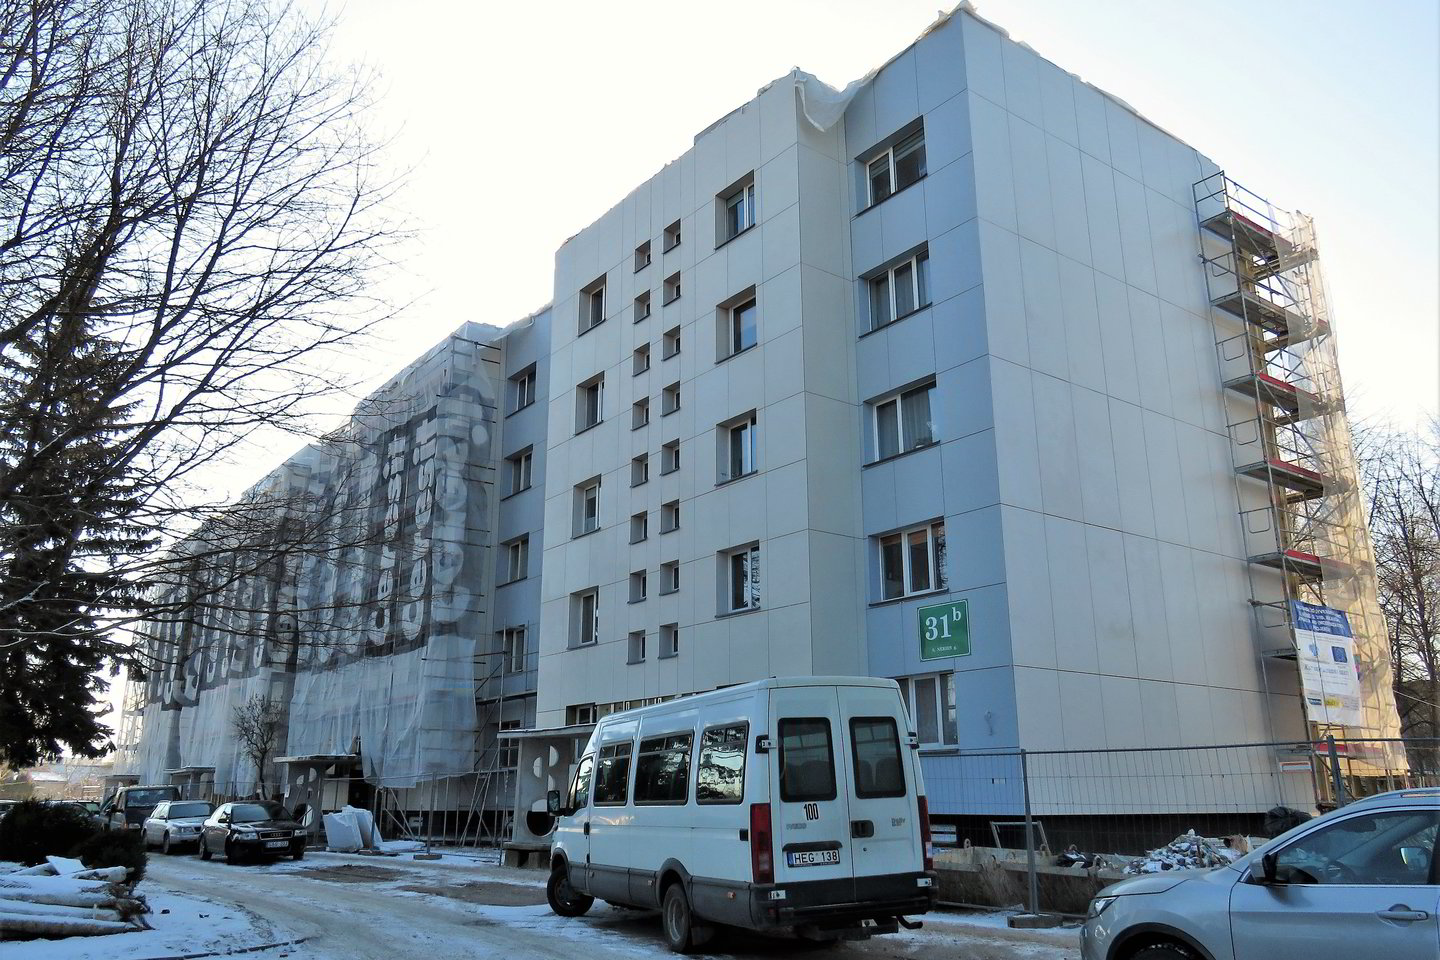  Vilkaviškyje, S.Nėries gatvėje stovinčio 55 butų namo gyventojai dėl renovacijos senokai konfliktuoja su viena  sutuoktinių pora.<br> L.Juodzevičienės nuotr.